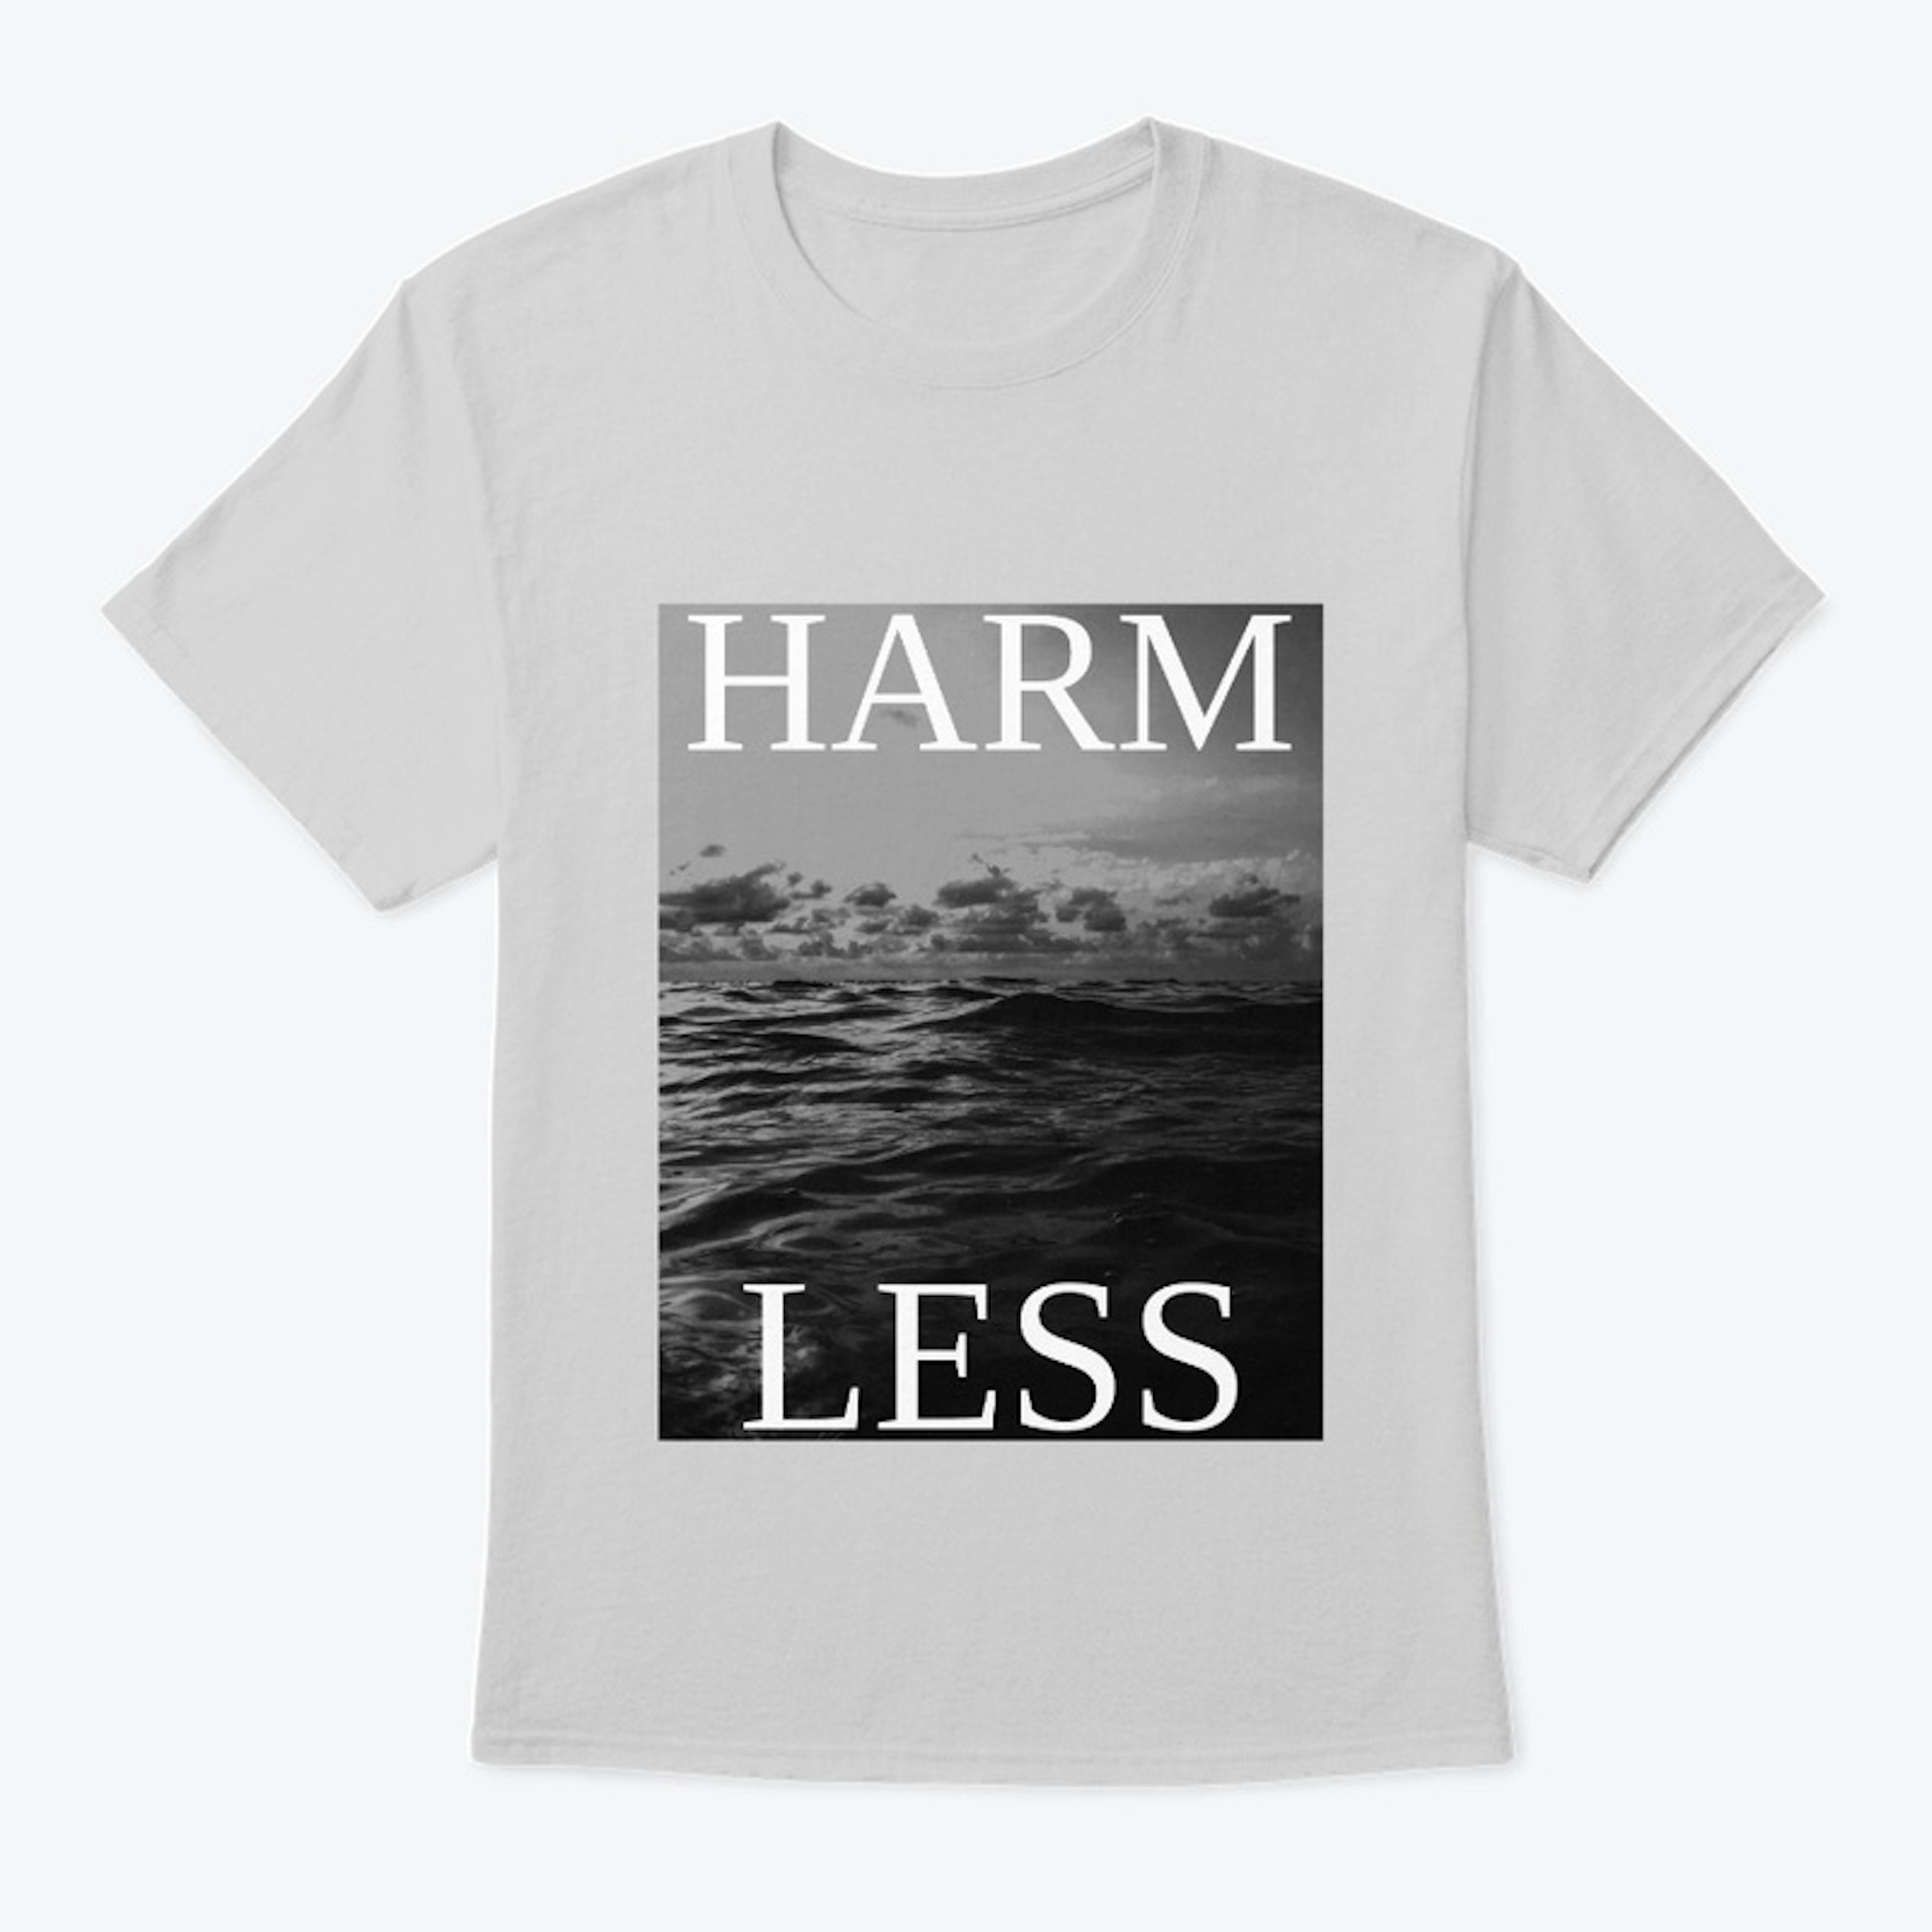 Harm Less (Harmless)